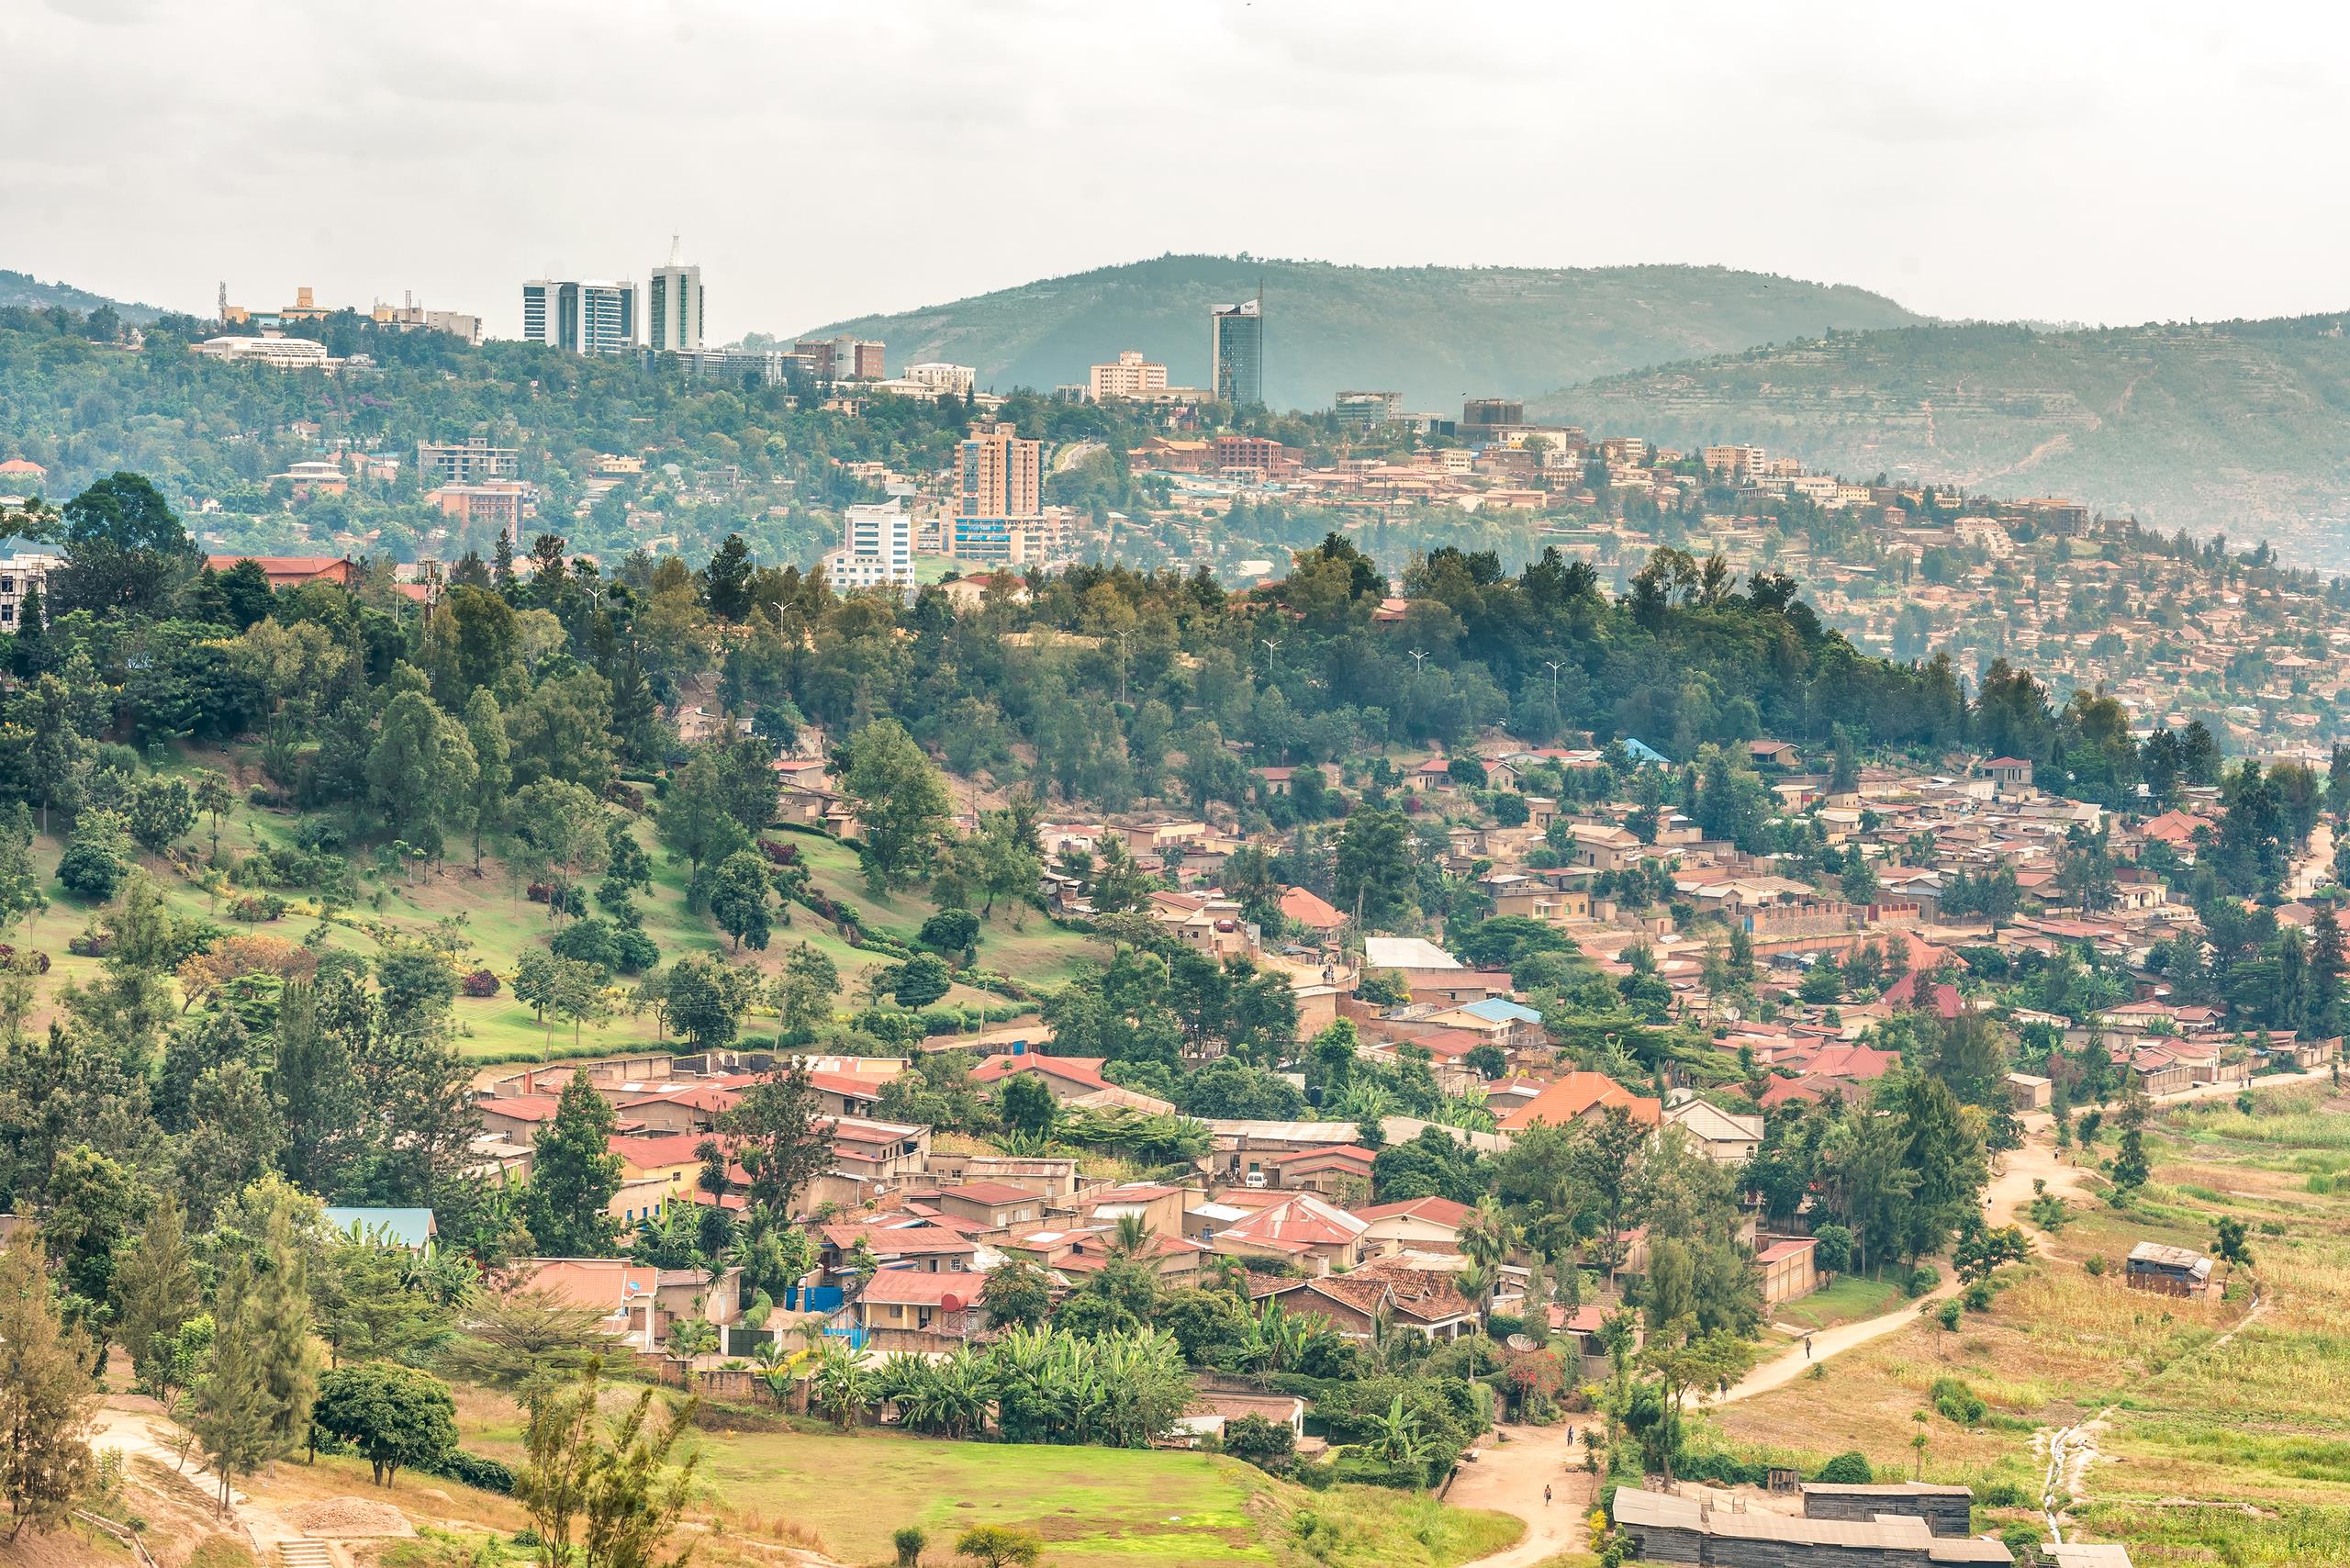 Panoramic view of Kigali in Rwanda